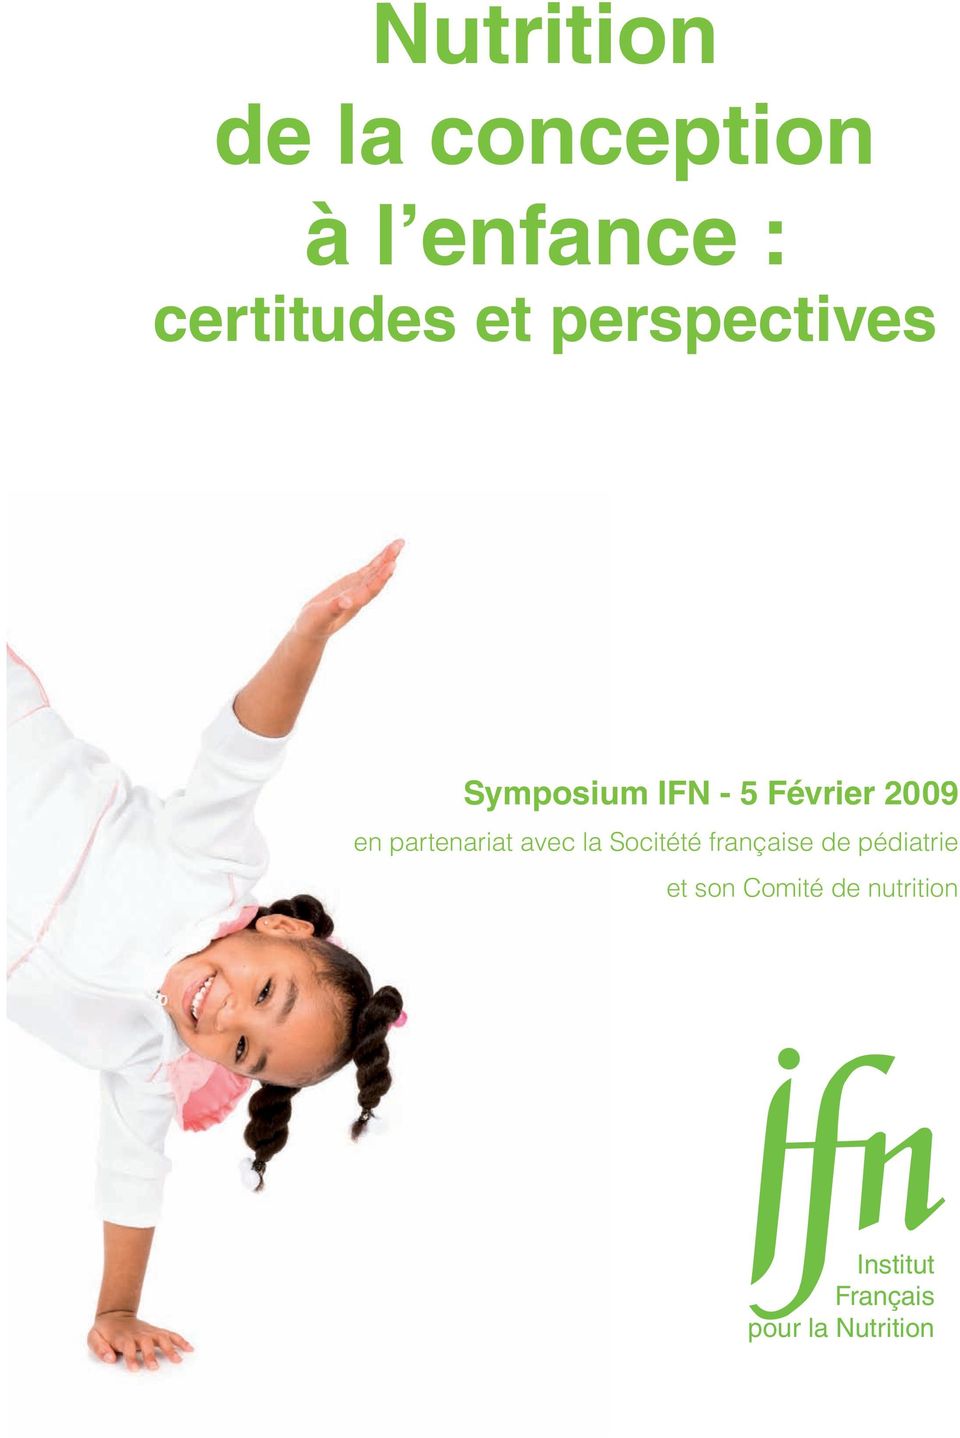 partenariat avec la Socitété française de pédiatrie